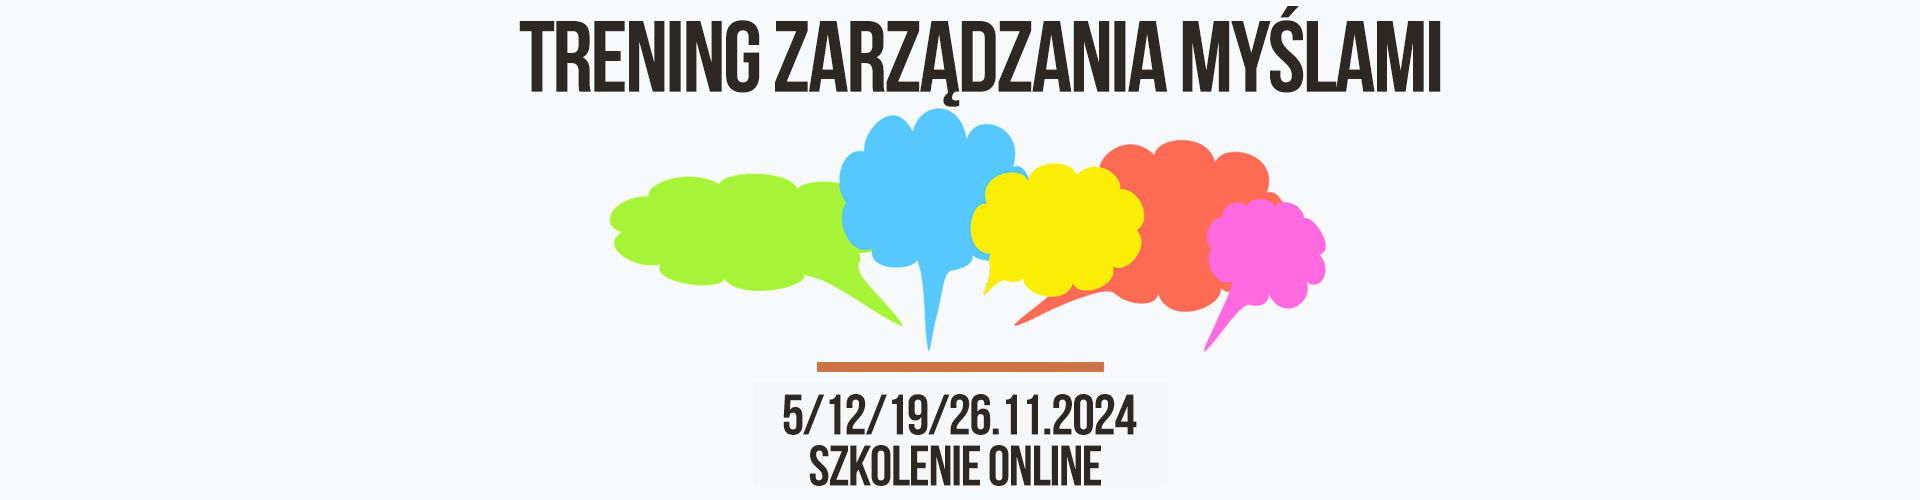 TRENING-ZARZADZANIA-MYSLAMI-3-2